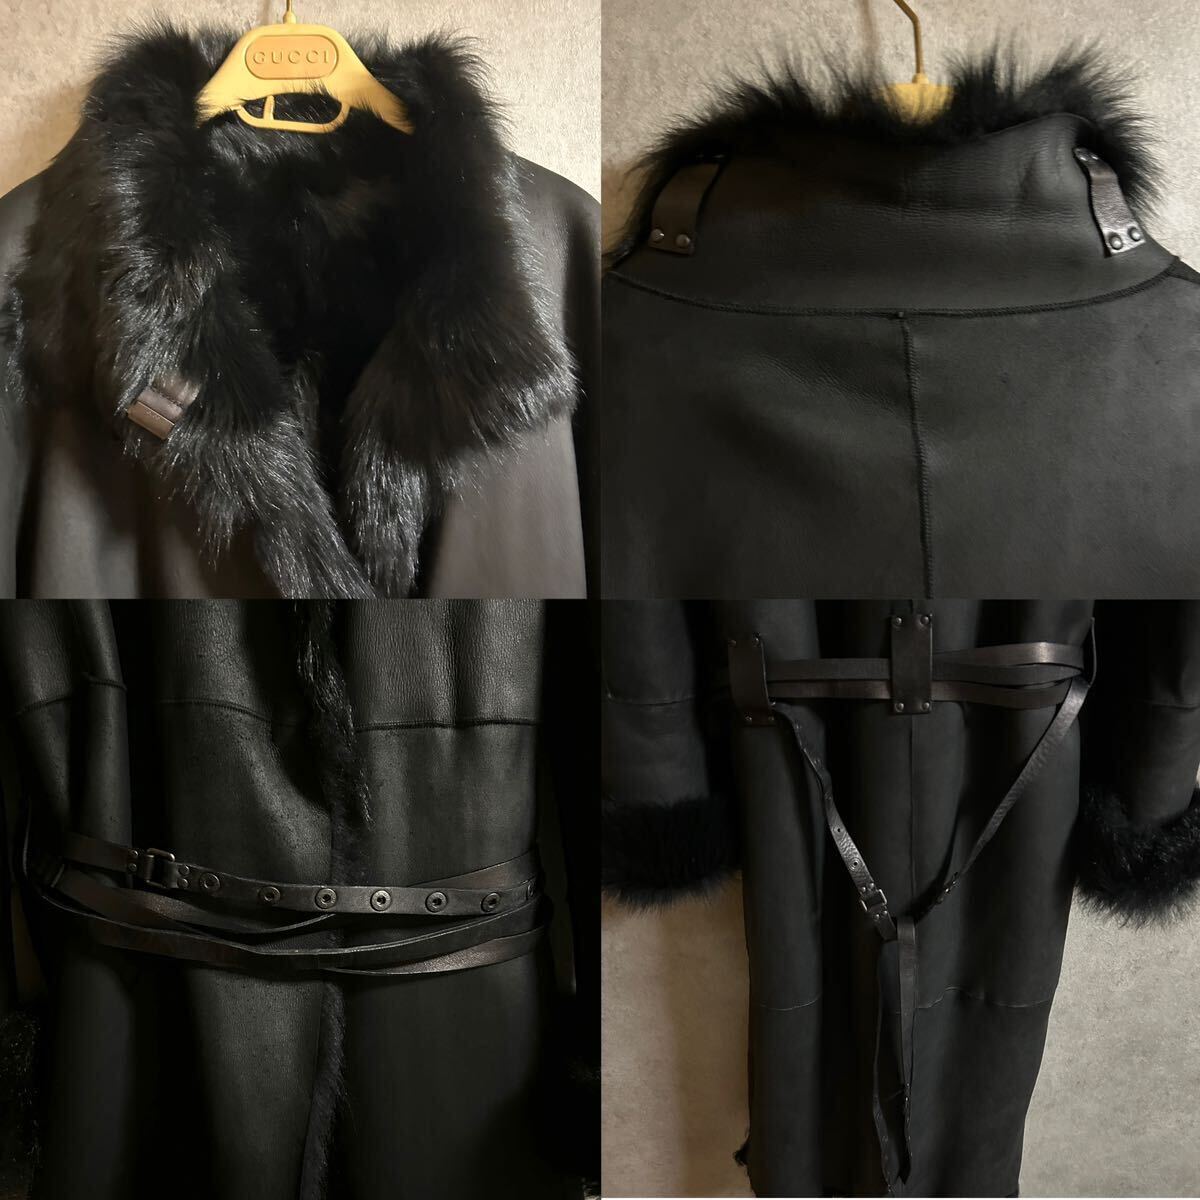 1 иен ~ 1 старт высококлассный товар [ ремень * вешалка есть ] Gucci овечья кожа мутон макси длина длинное пальто довольно большой XL мех меховое пальто внешний 